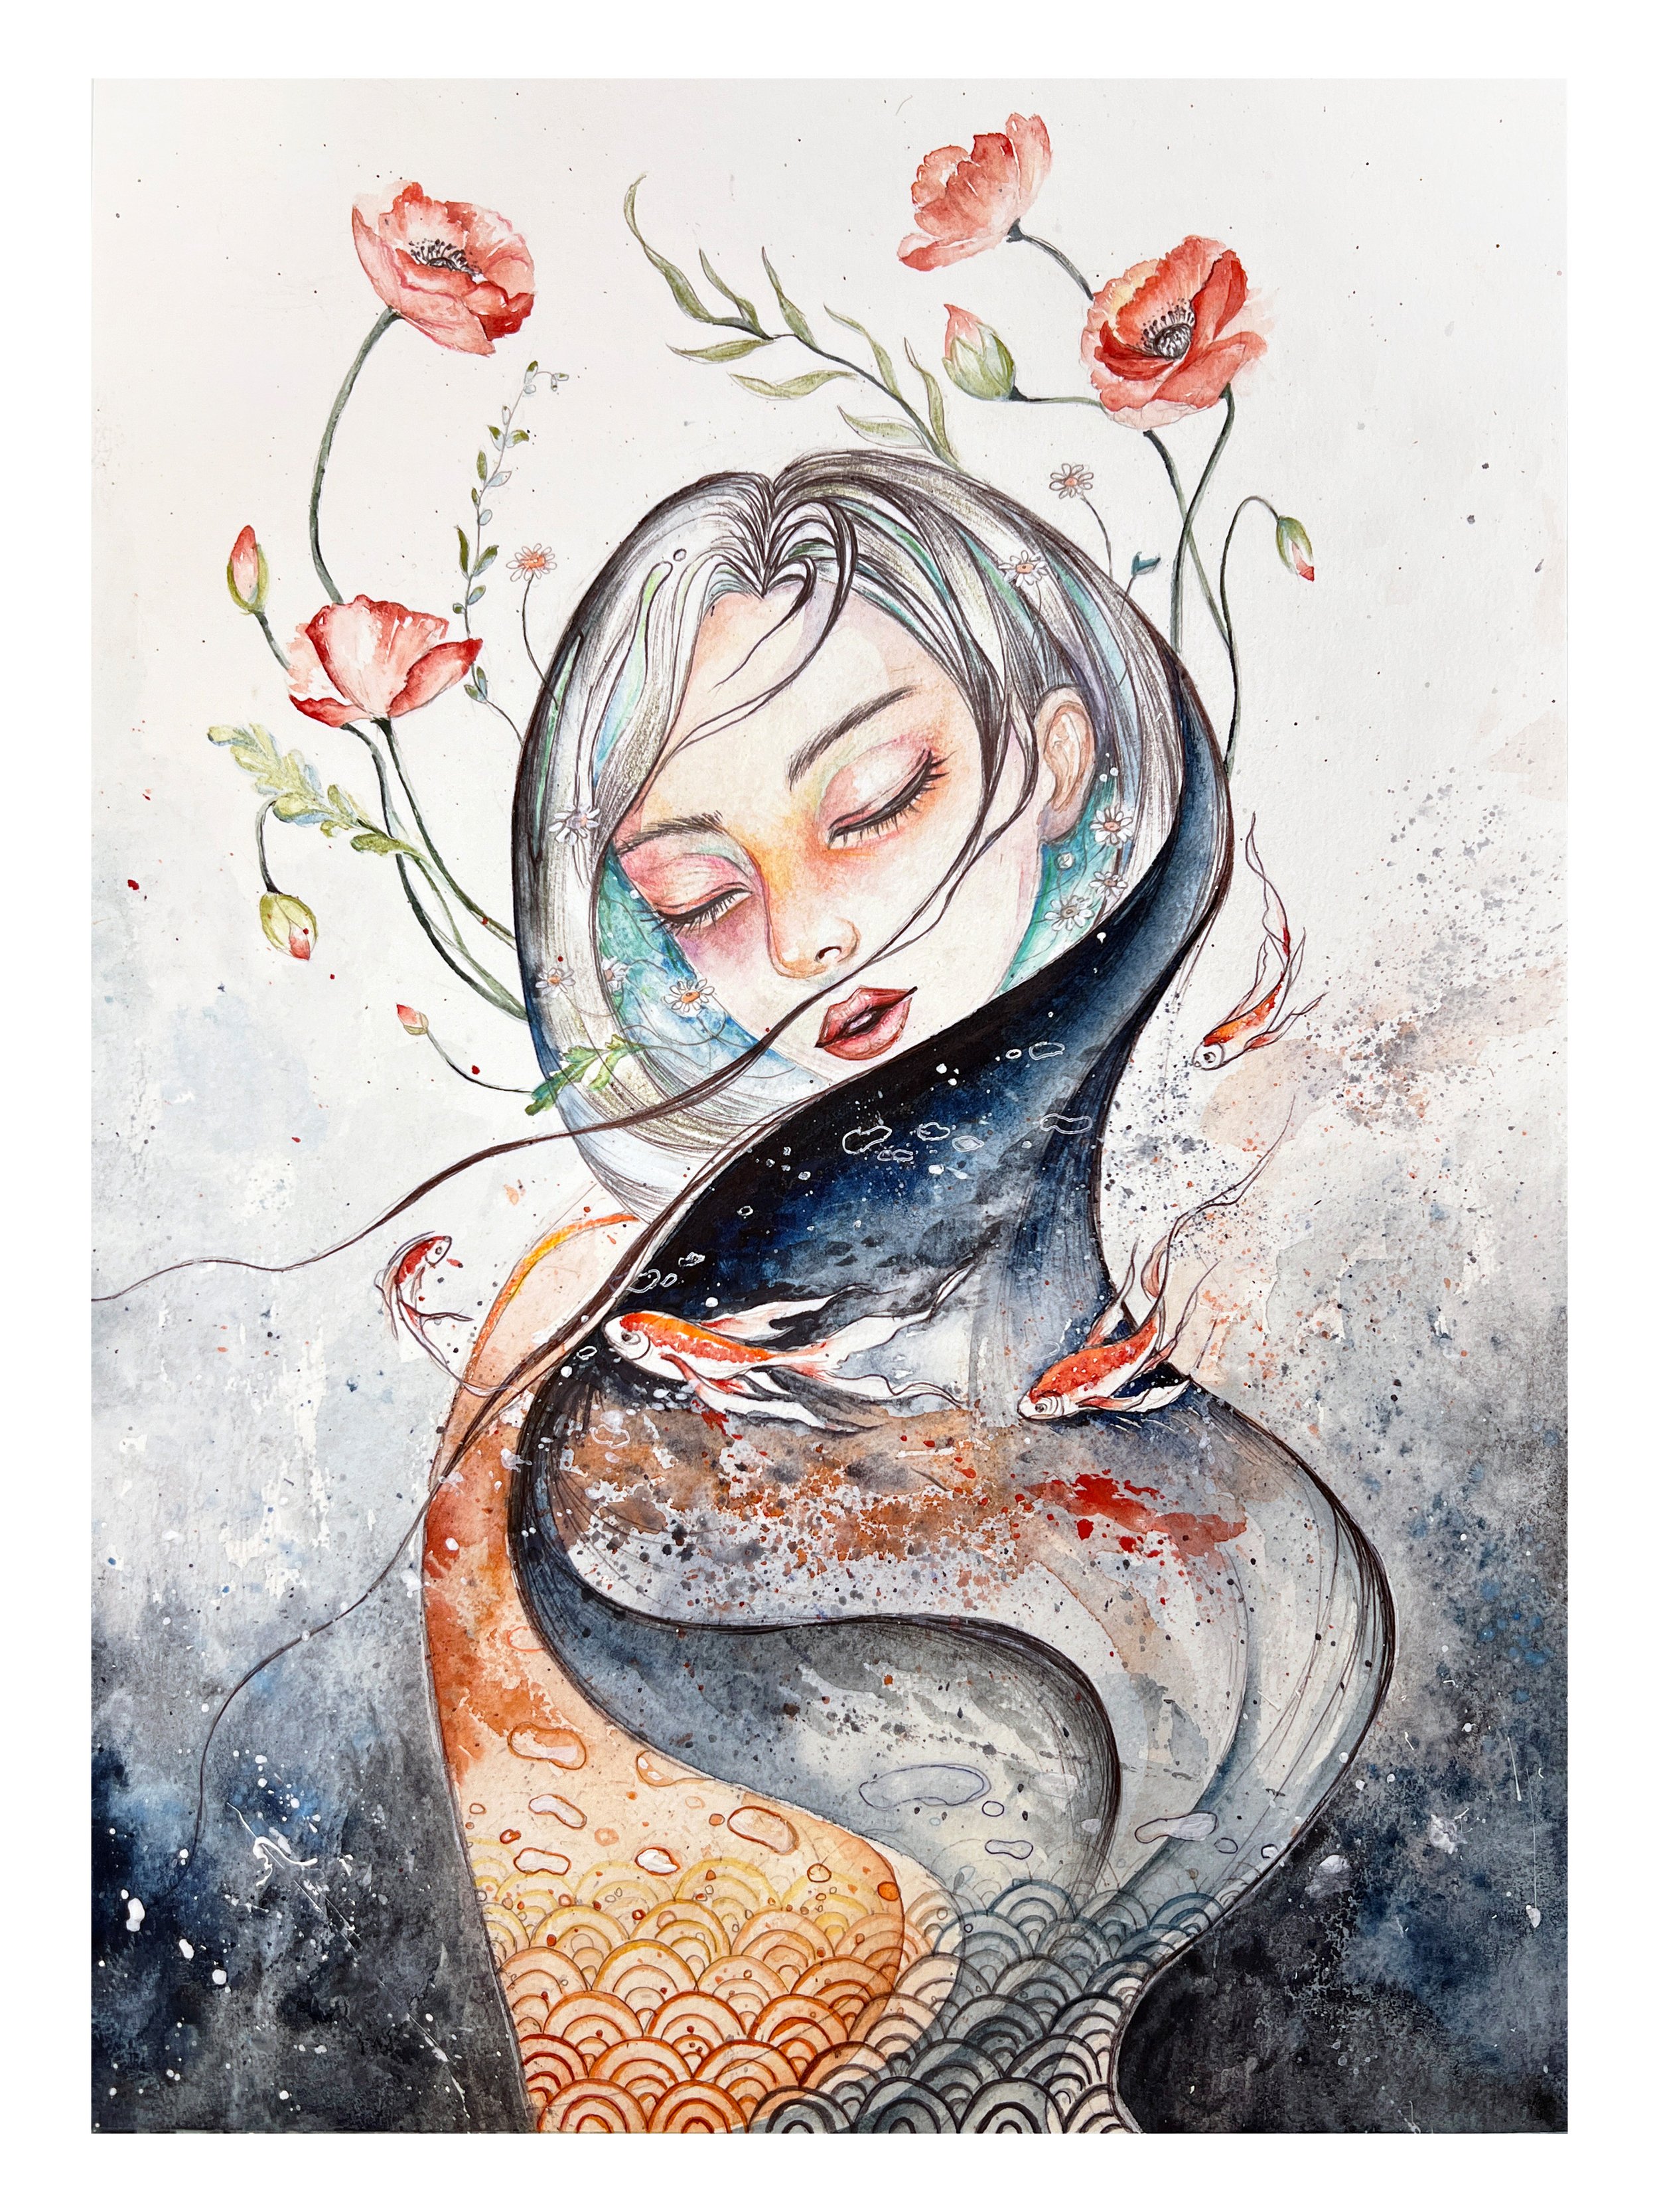 The Flower Mermaid